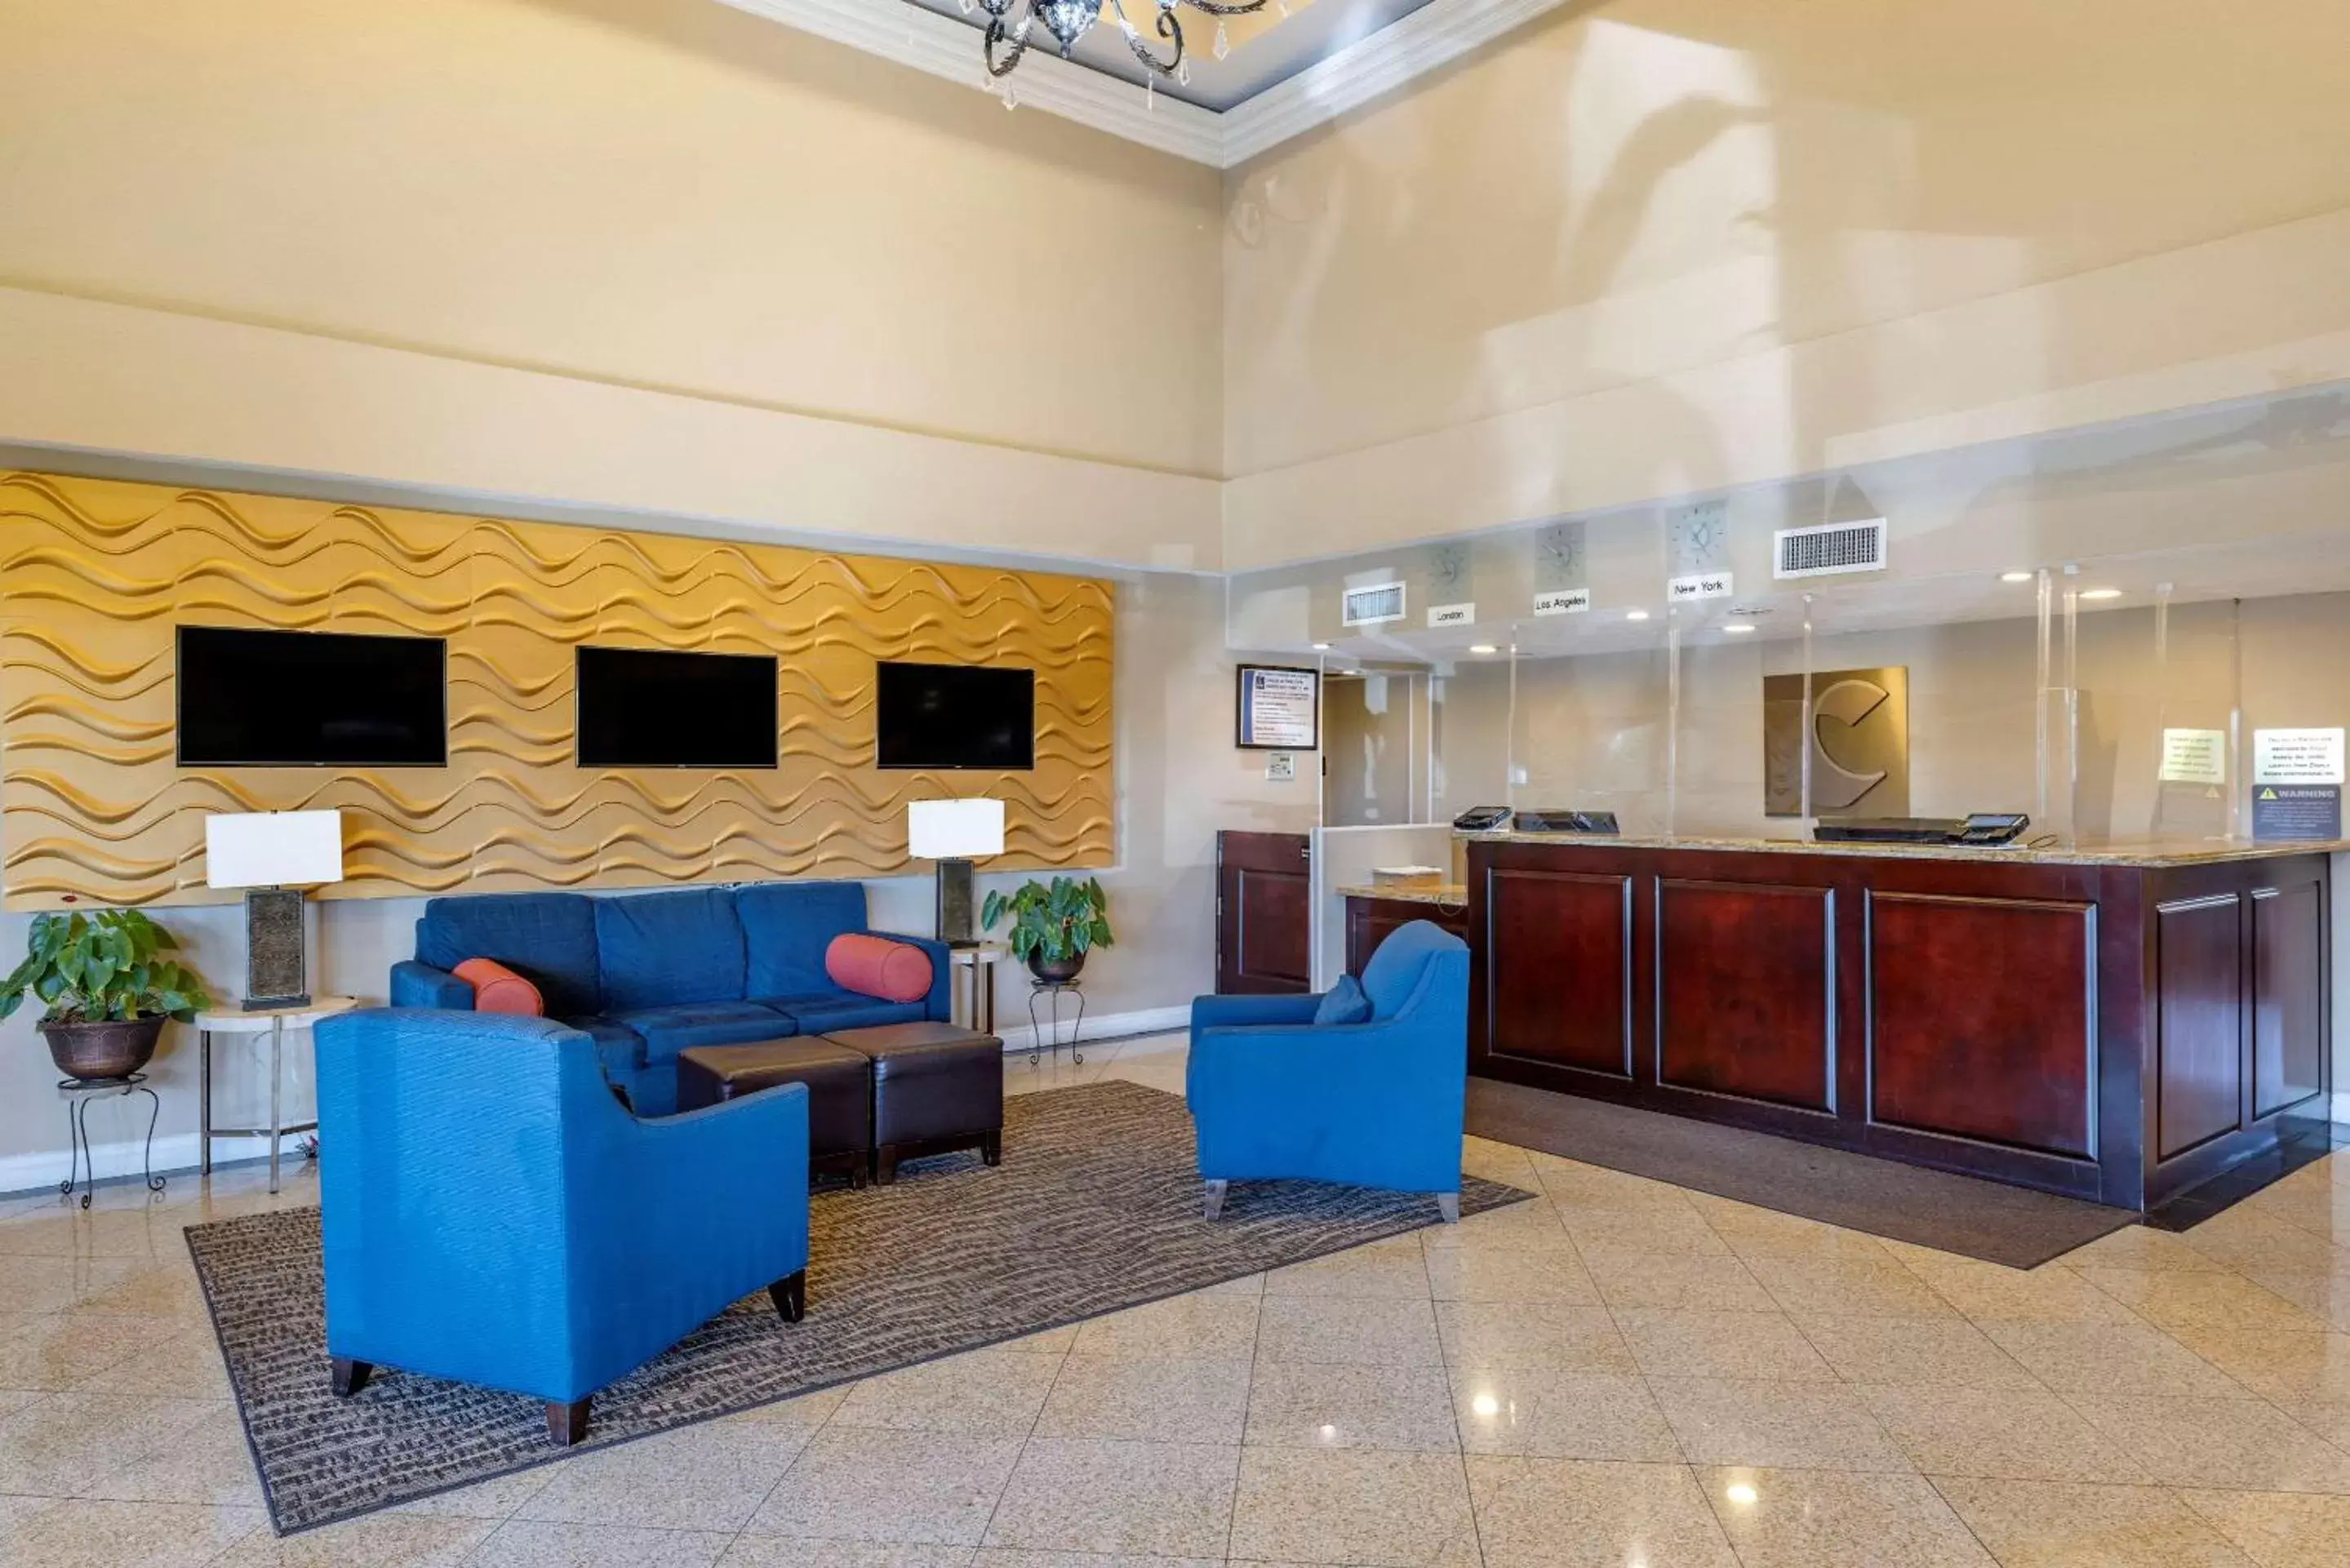 Lobby or reception, Lobby/Reception in Comfort Inn & Suites Huntington Beach